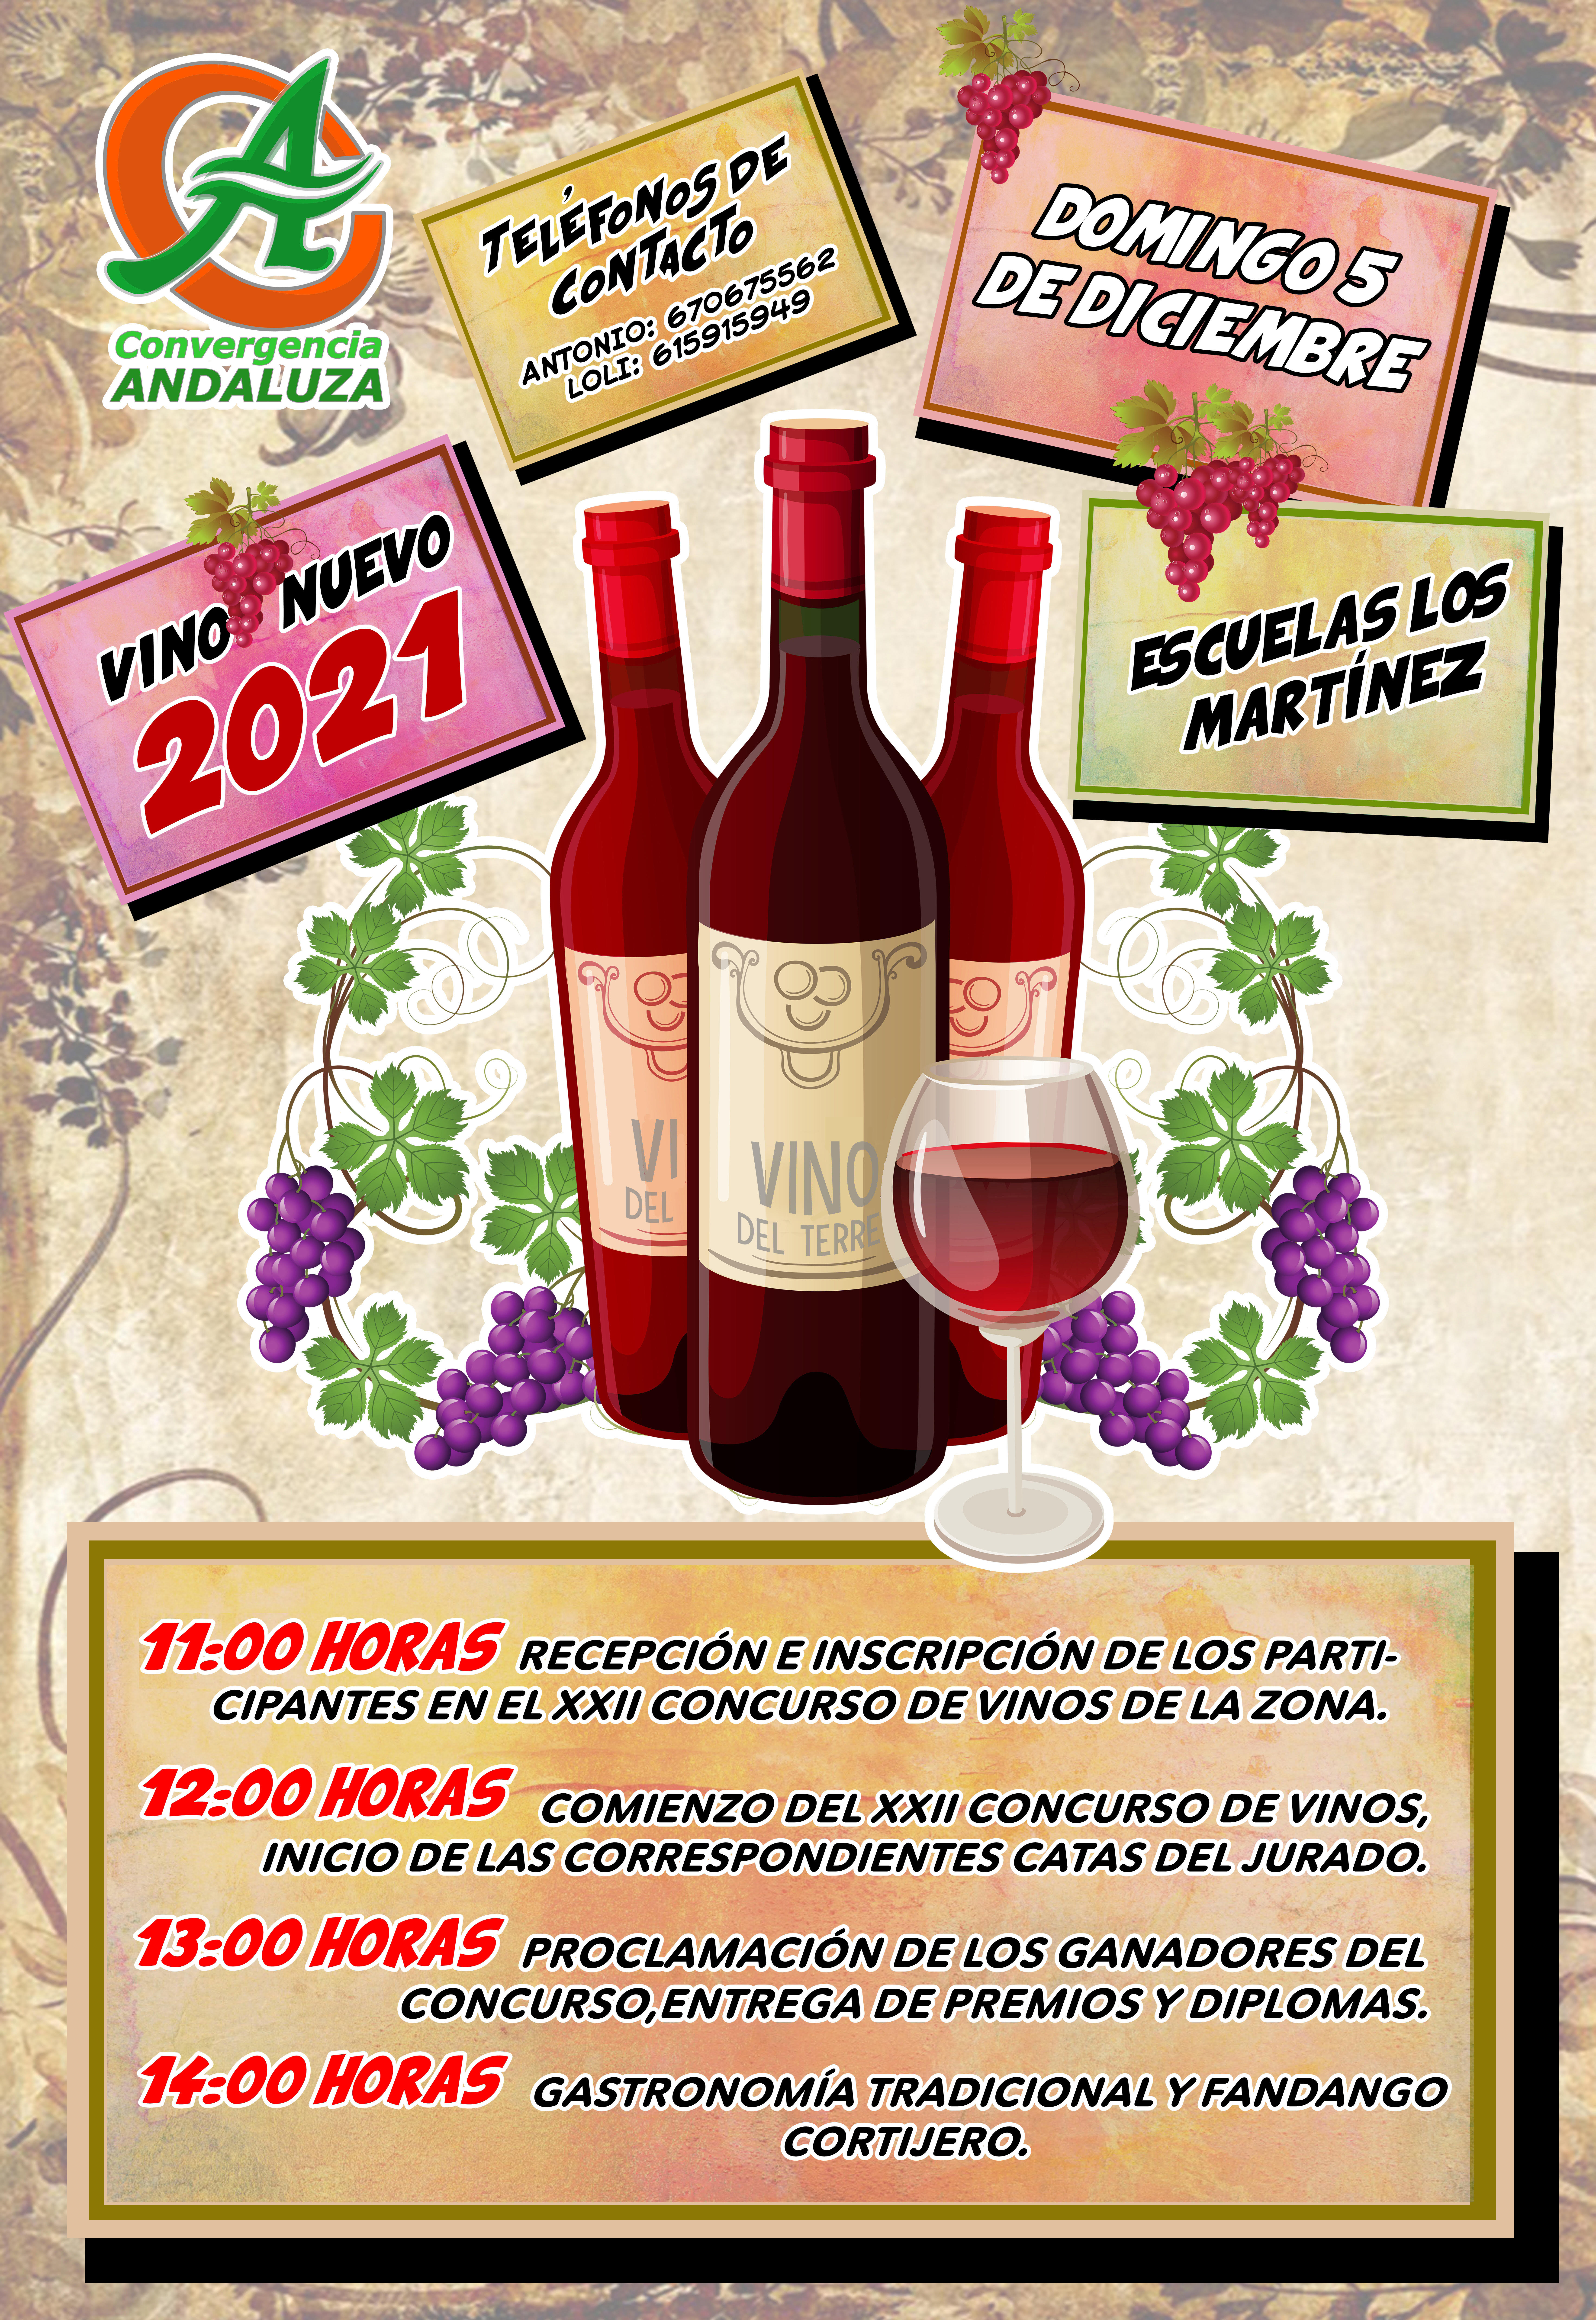 El domingo 5 de diciembre se celebra la edicin XXII del Vino Nuevo en las escuelas de Los Martnez, en Ro Seco.